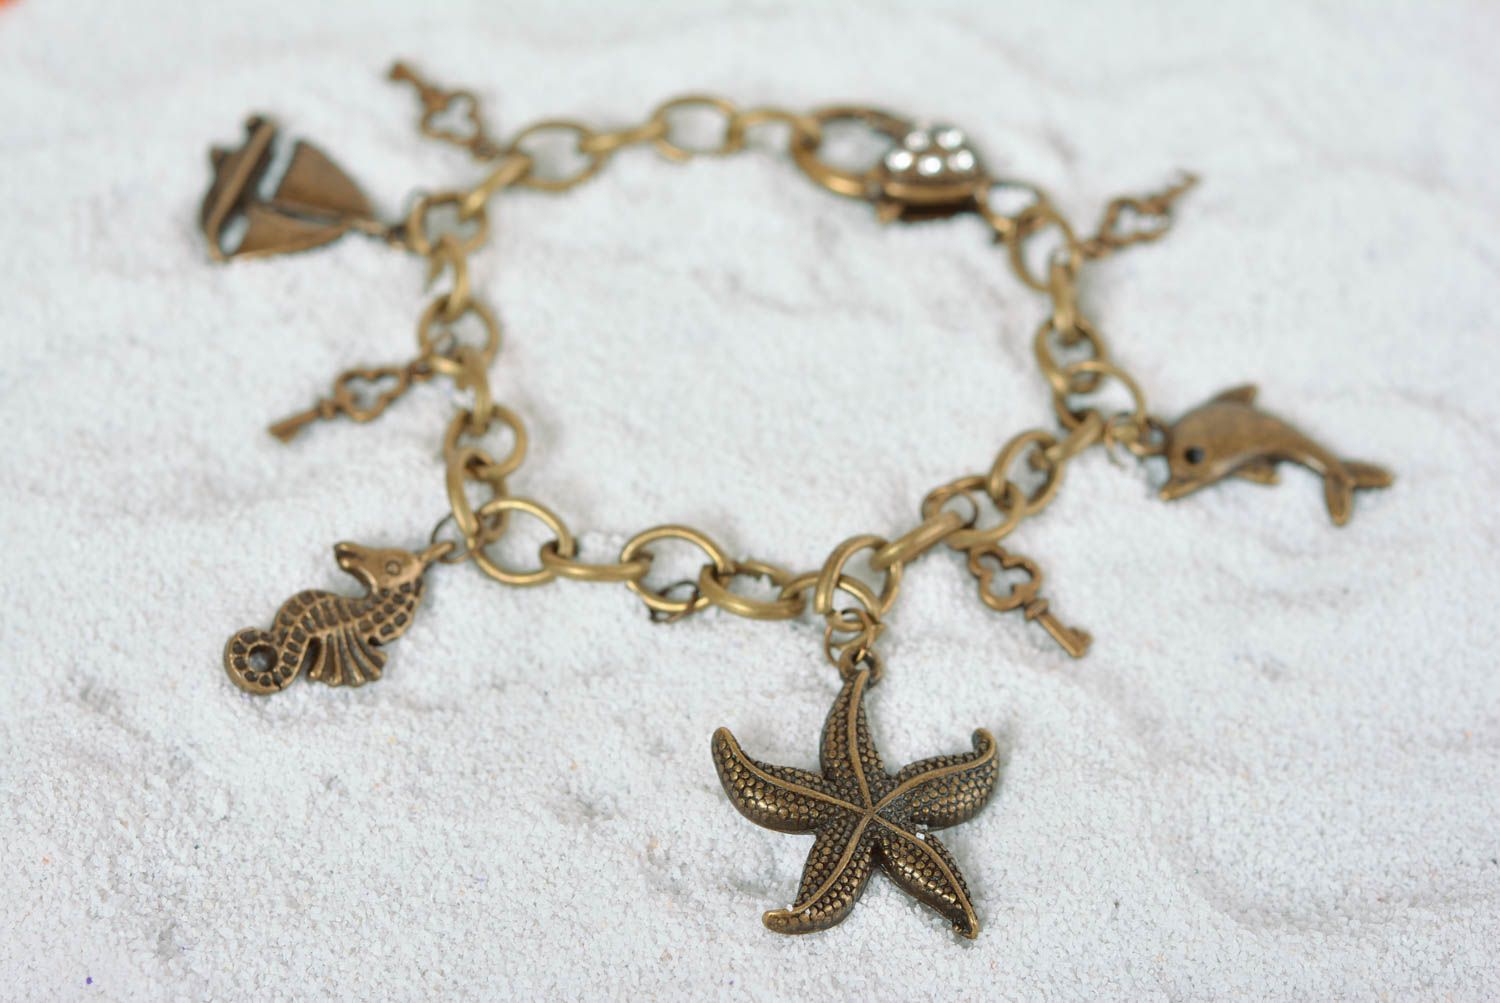 Handmade jewelry charm bracelet metal jewelry chain bracelet presents for her photo 1